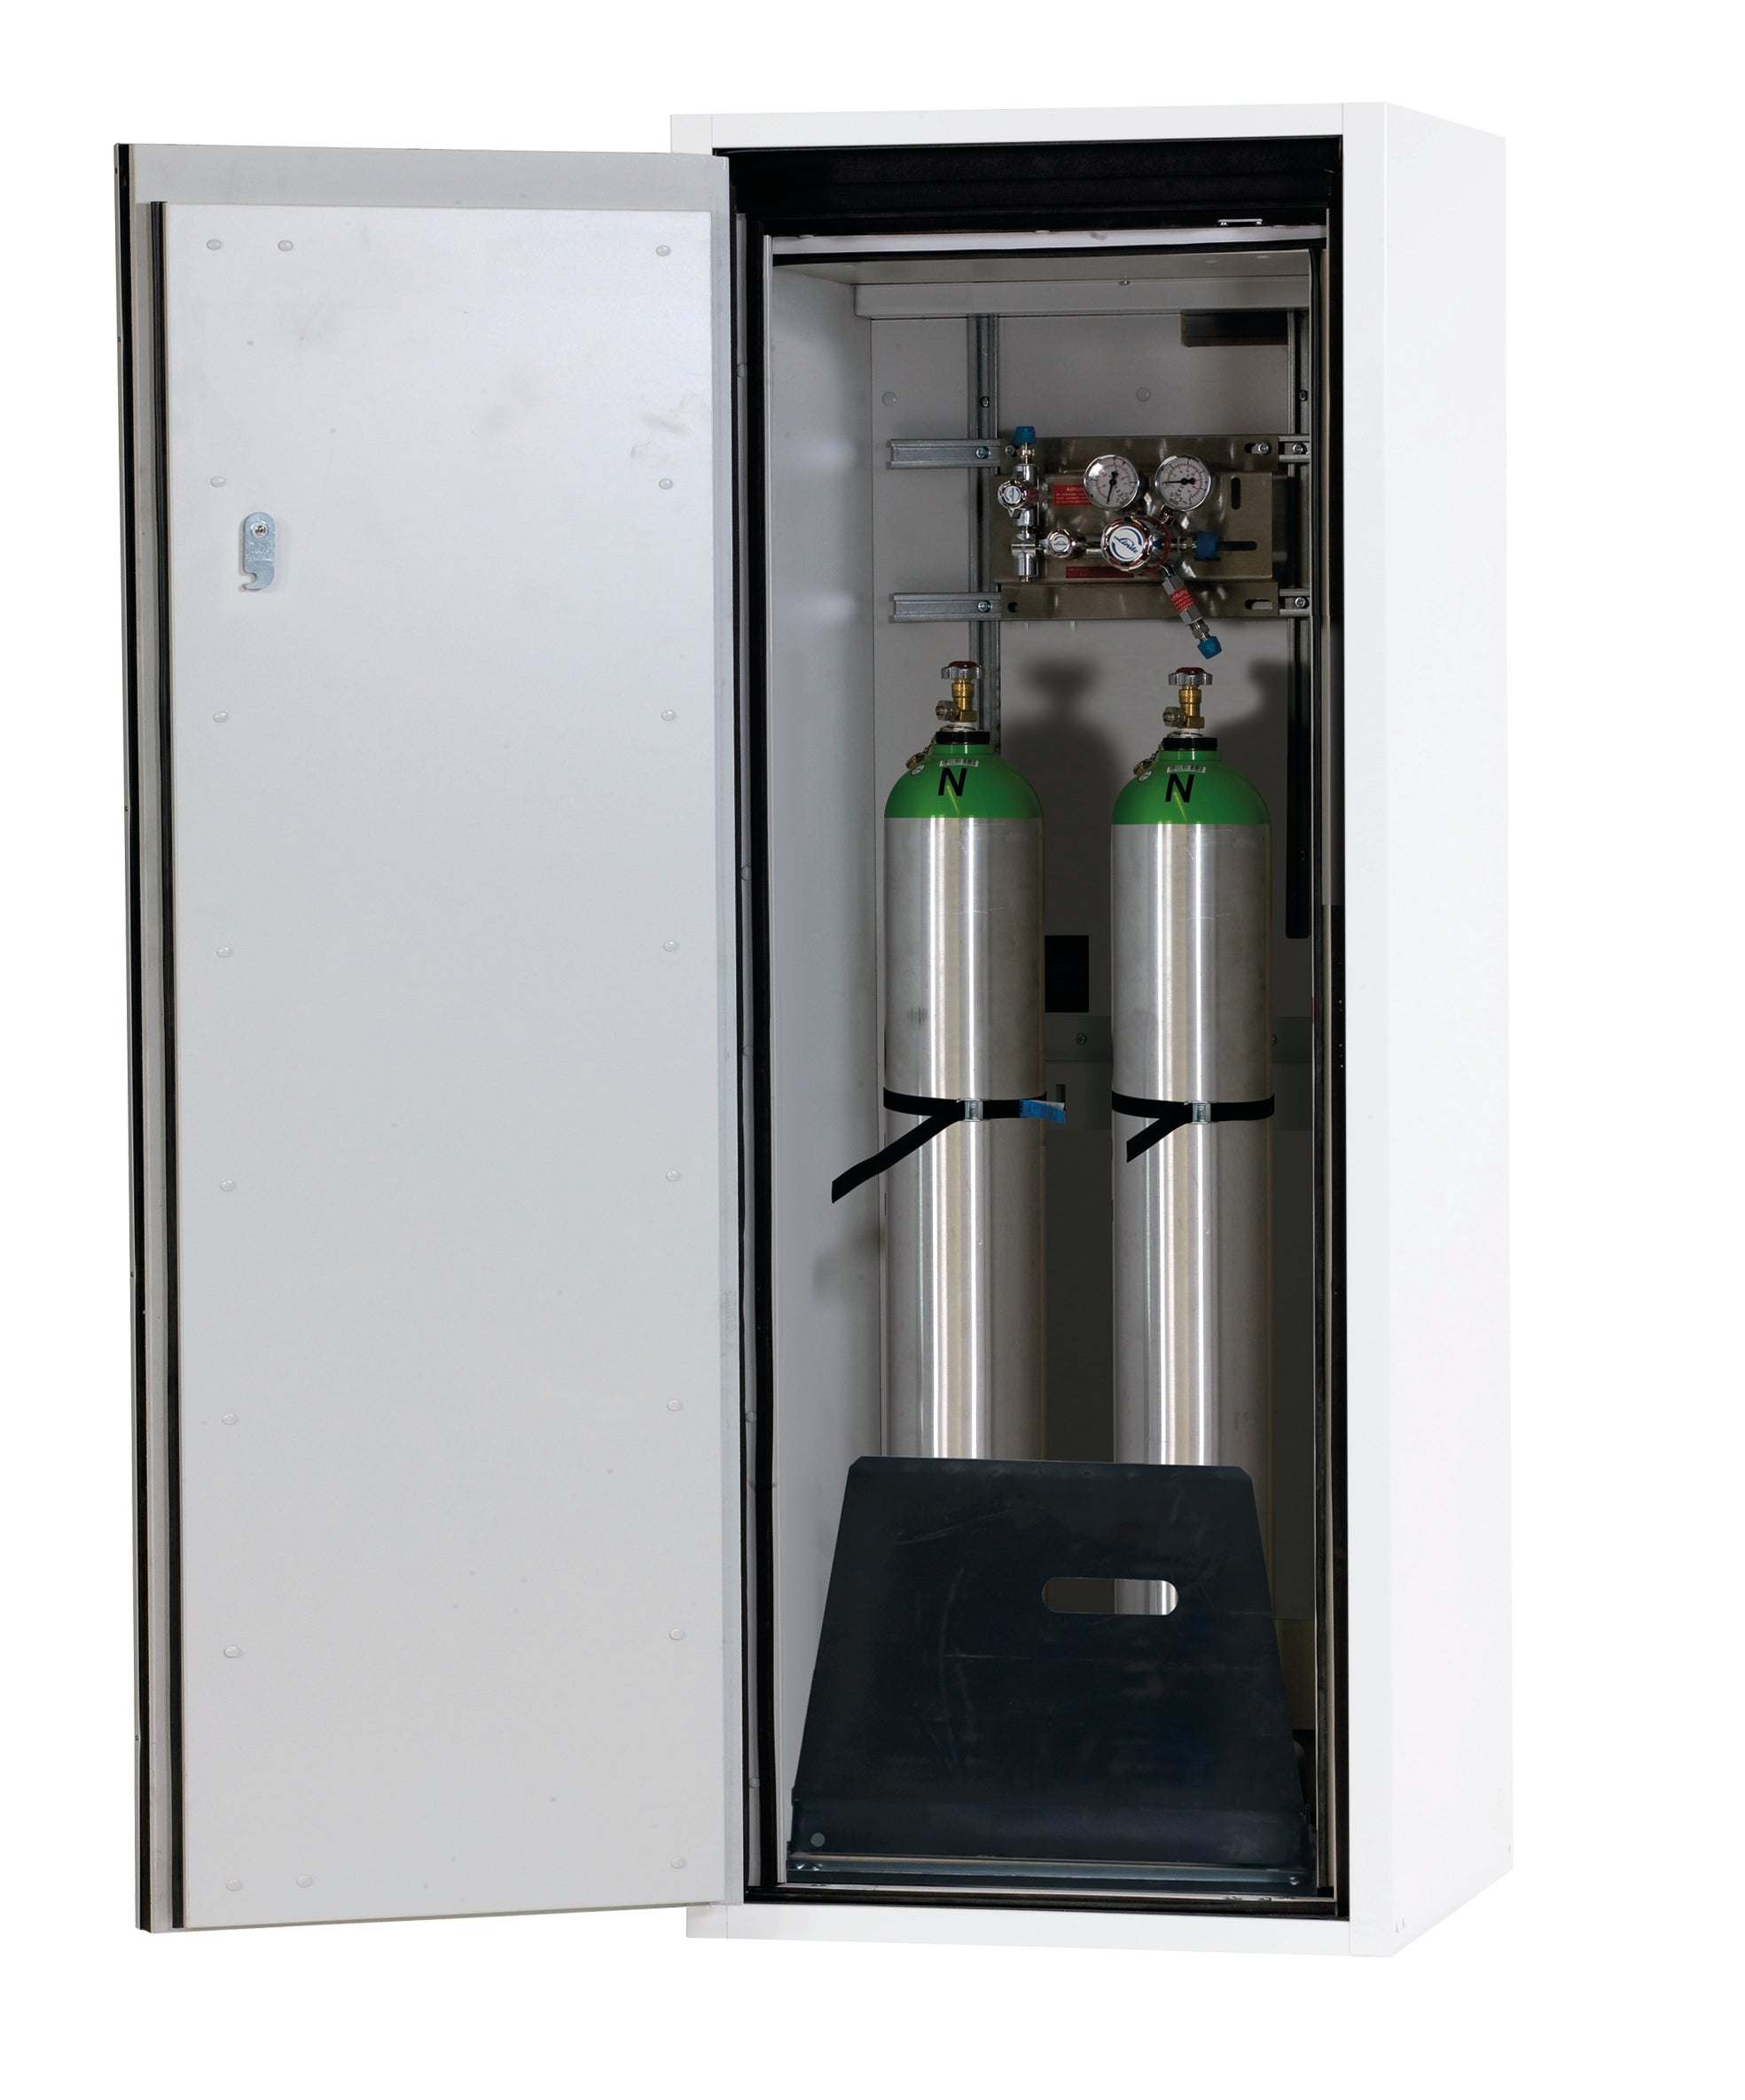 Typ 90 Druckgasflaschenschrank G-ULTIMATE-90 Modell G90.145.060 in laborweiss (ähnl. RAL 9016) mit Standardinneneinrichtung für 2x Druckgasflaschen à  10 Liter